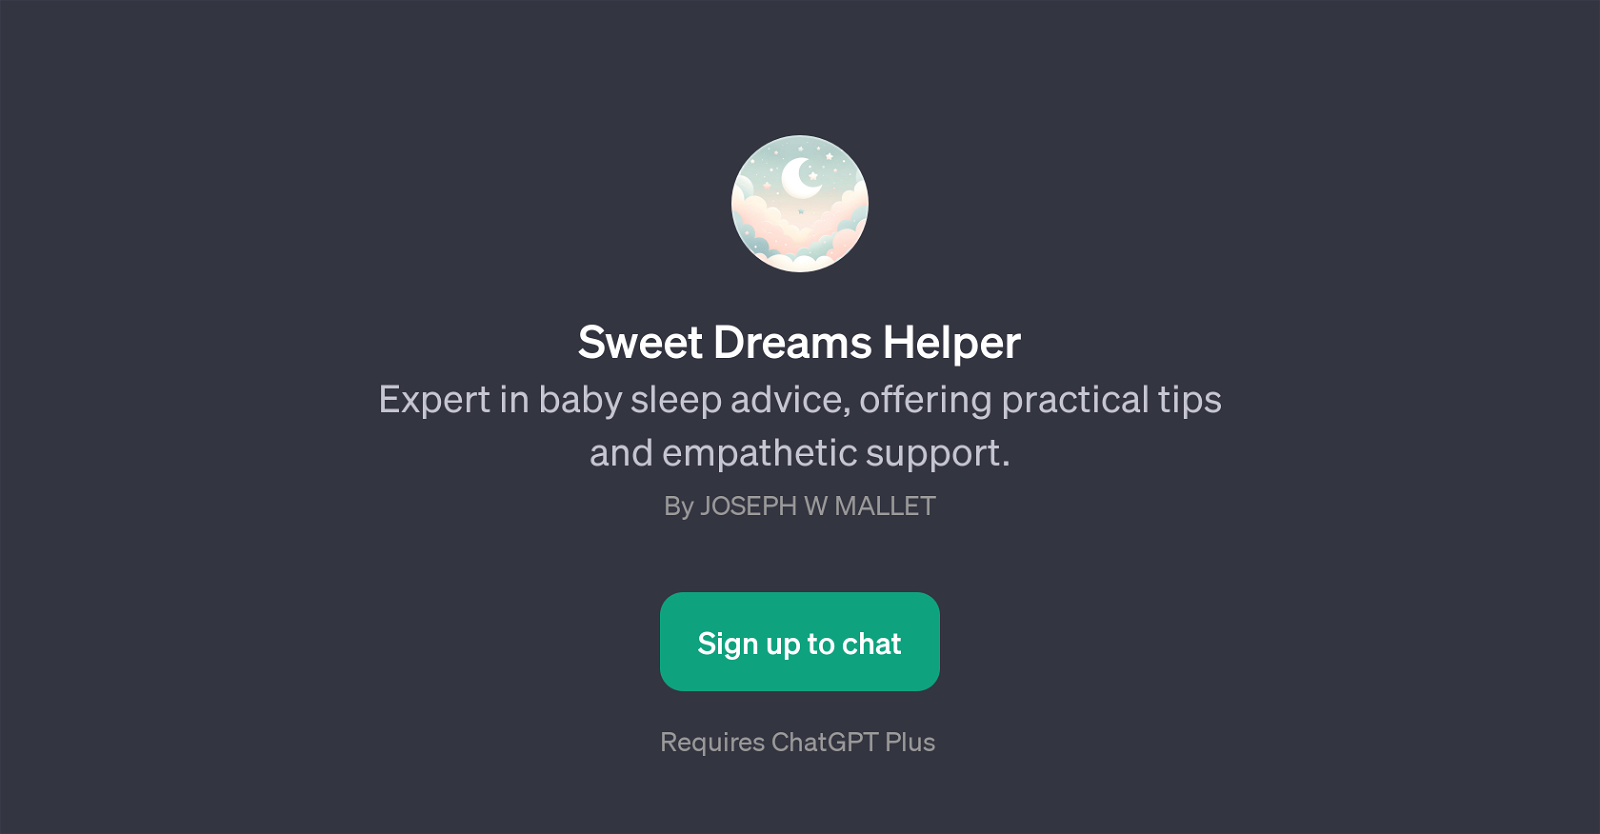 Sweet Dreams Helper website